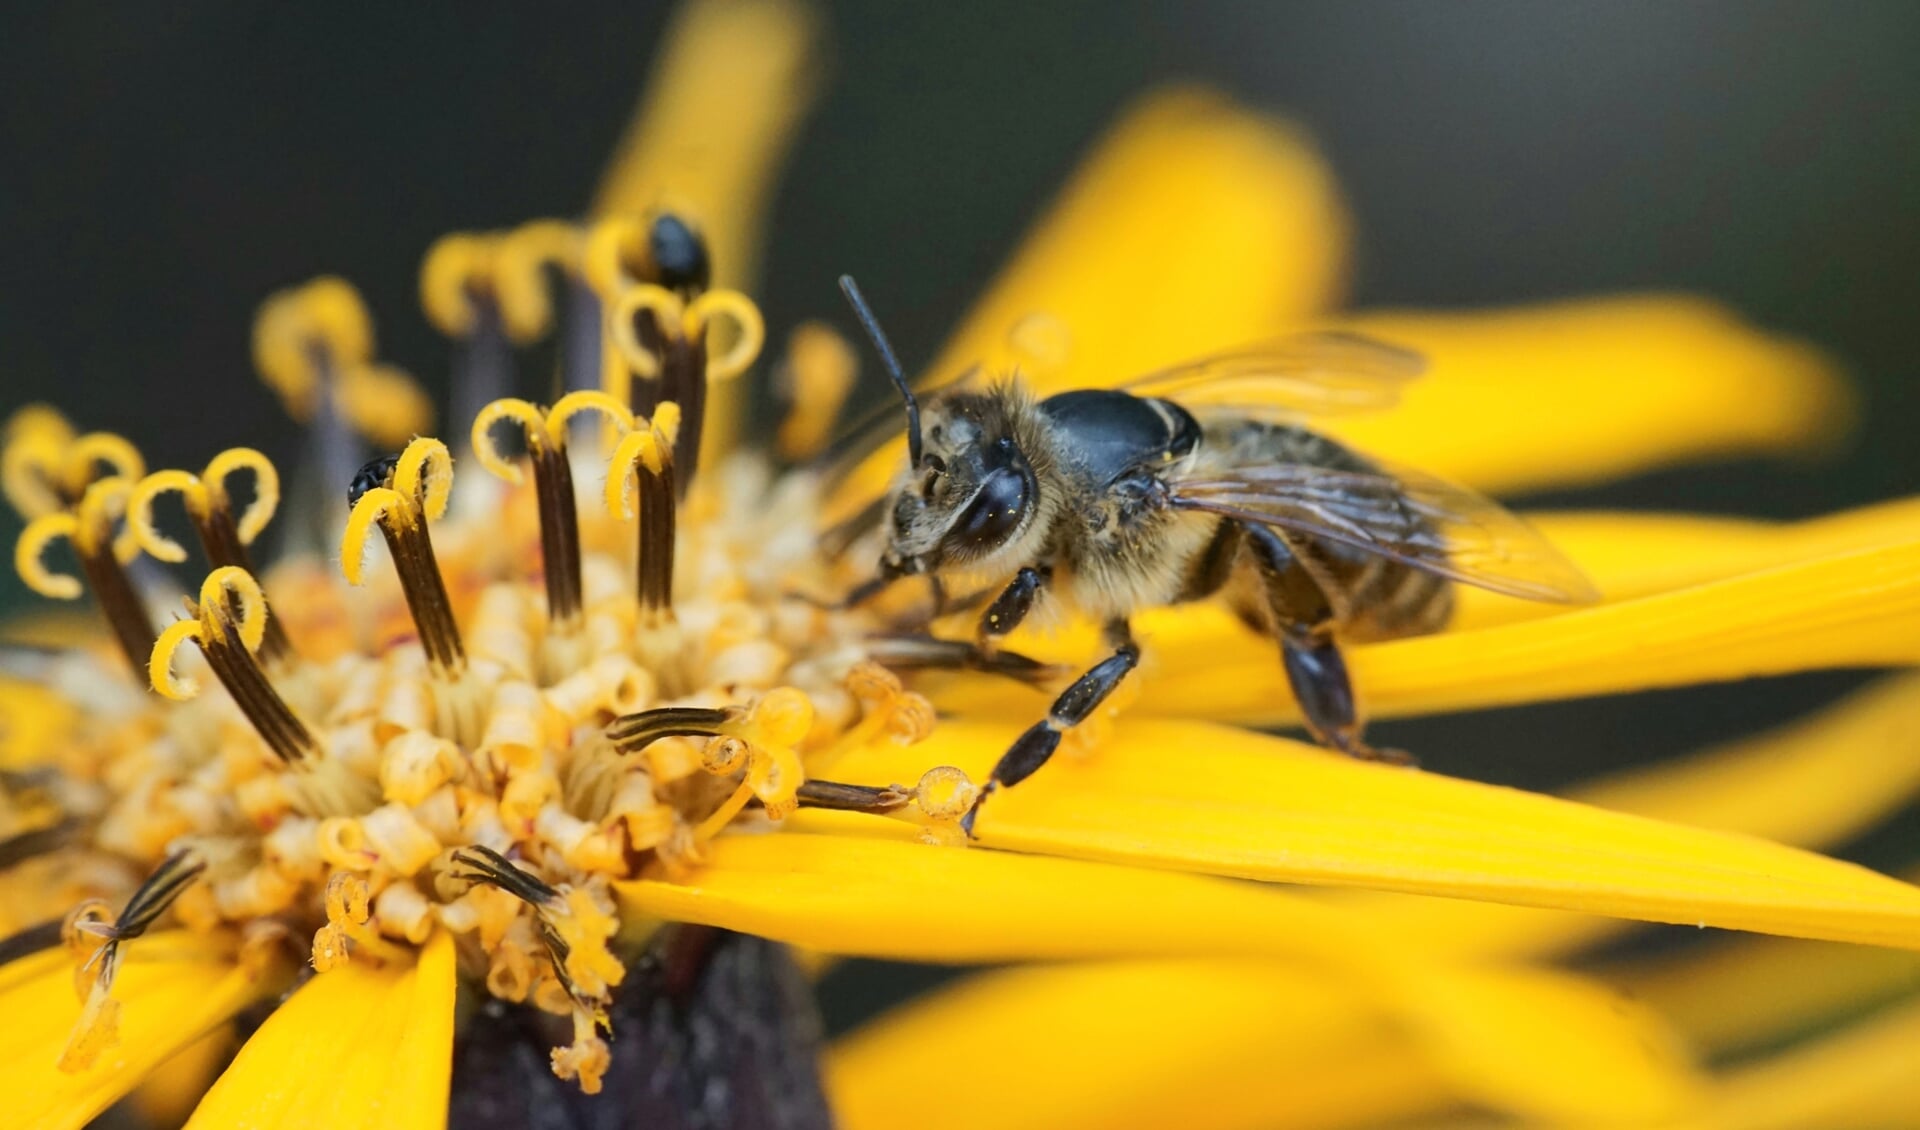 Bijen verzamelen stuifmeel